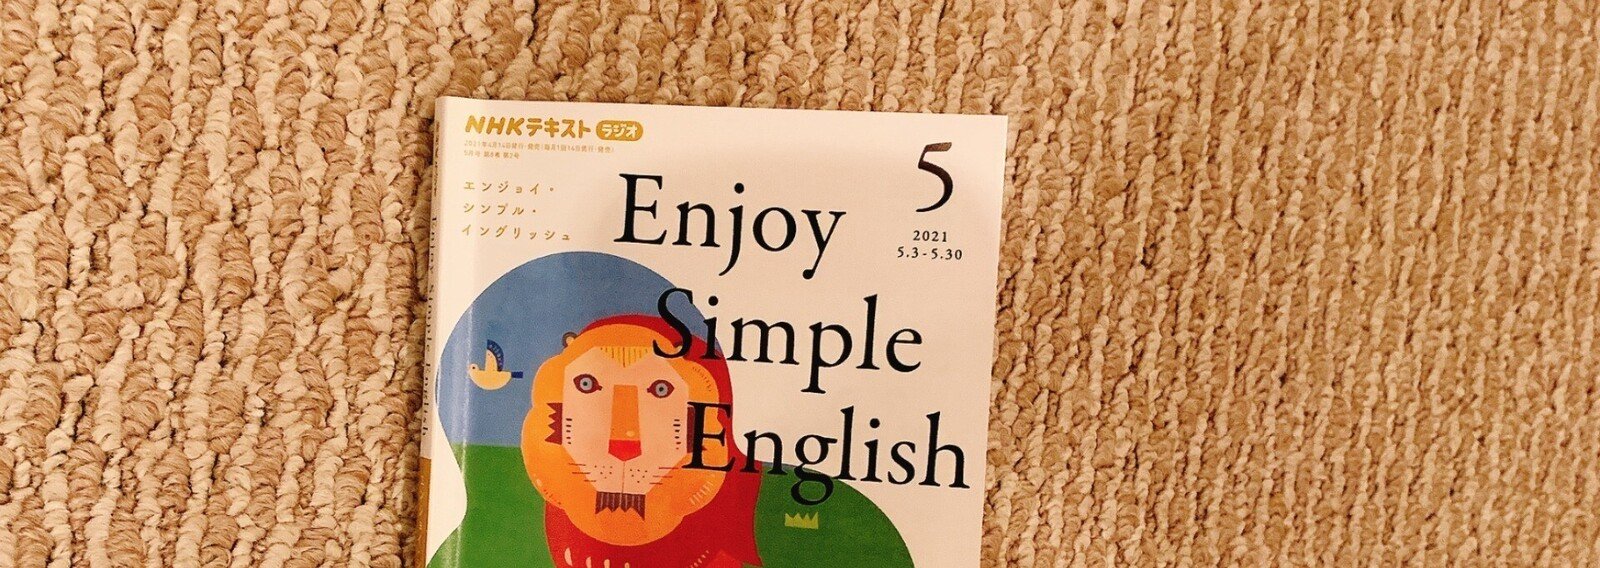 豪華 enjoy simple english(エンジョイシンプルイングリッシュ